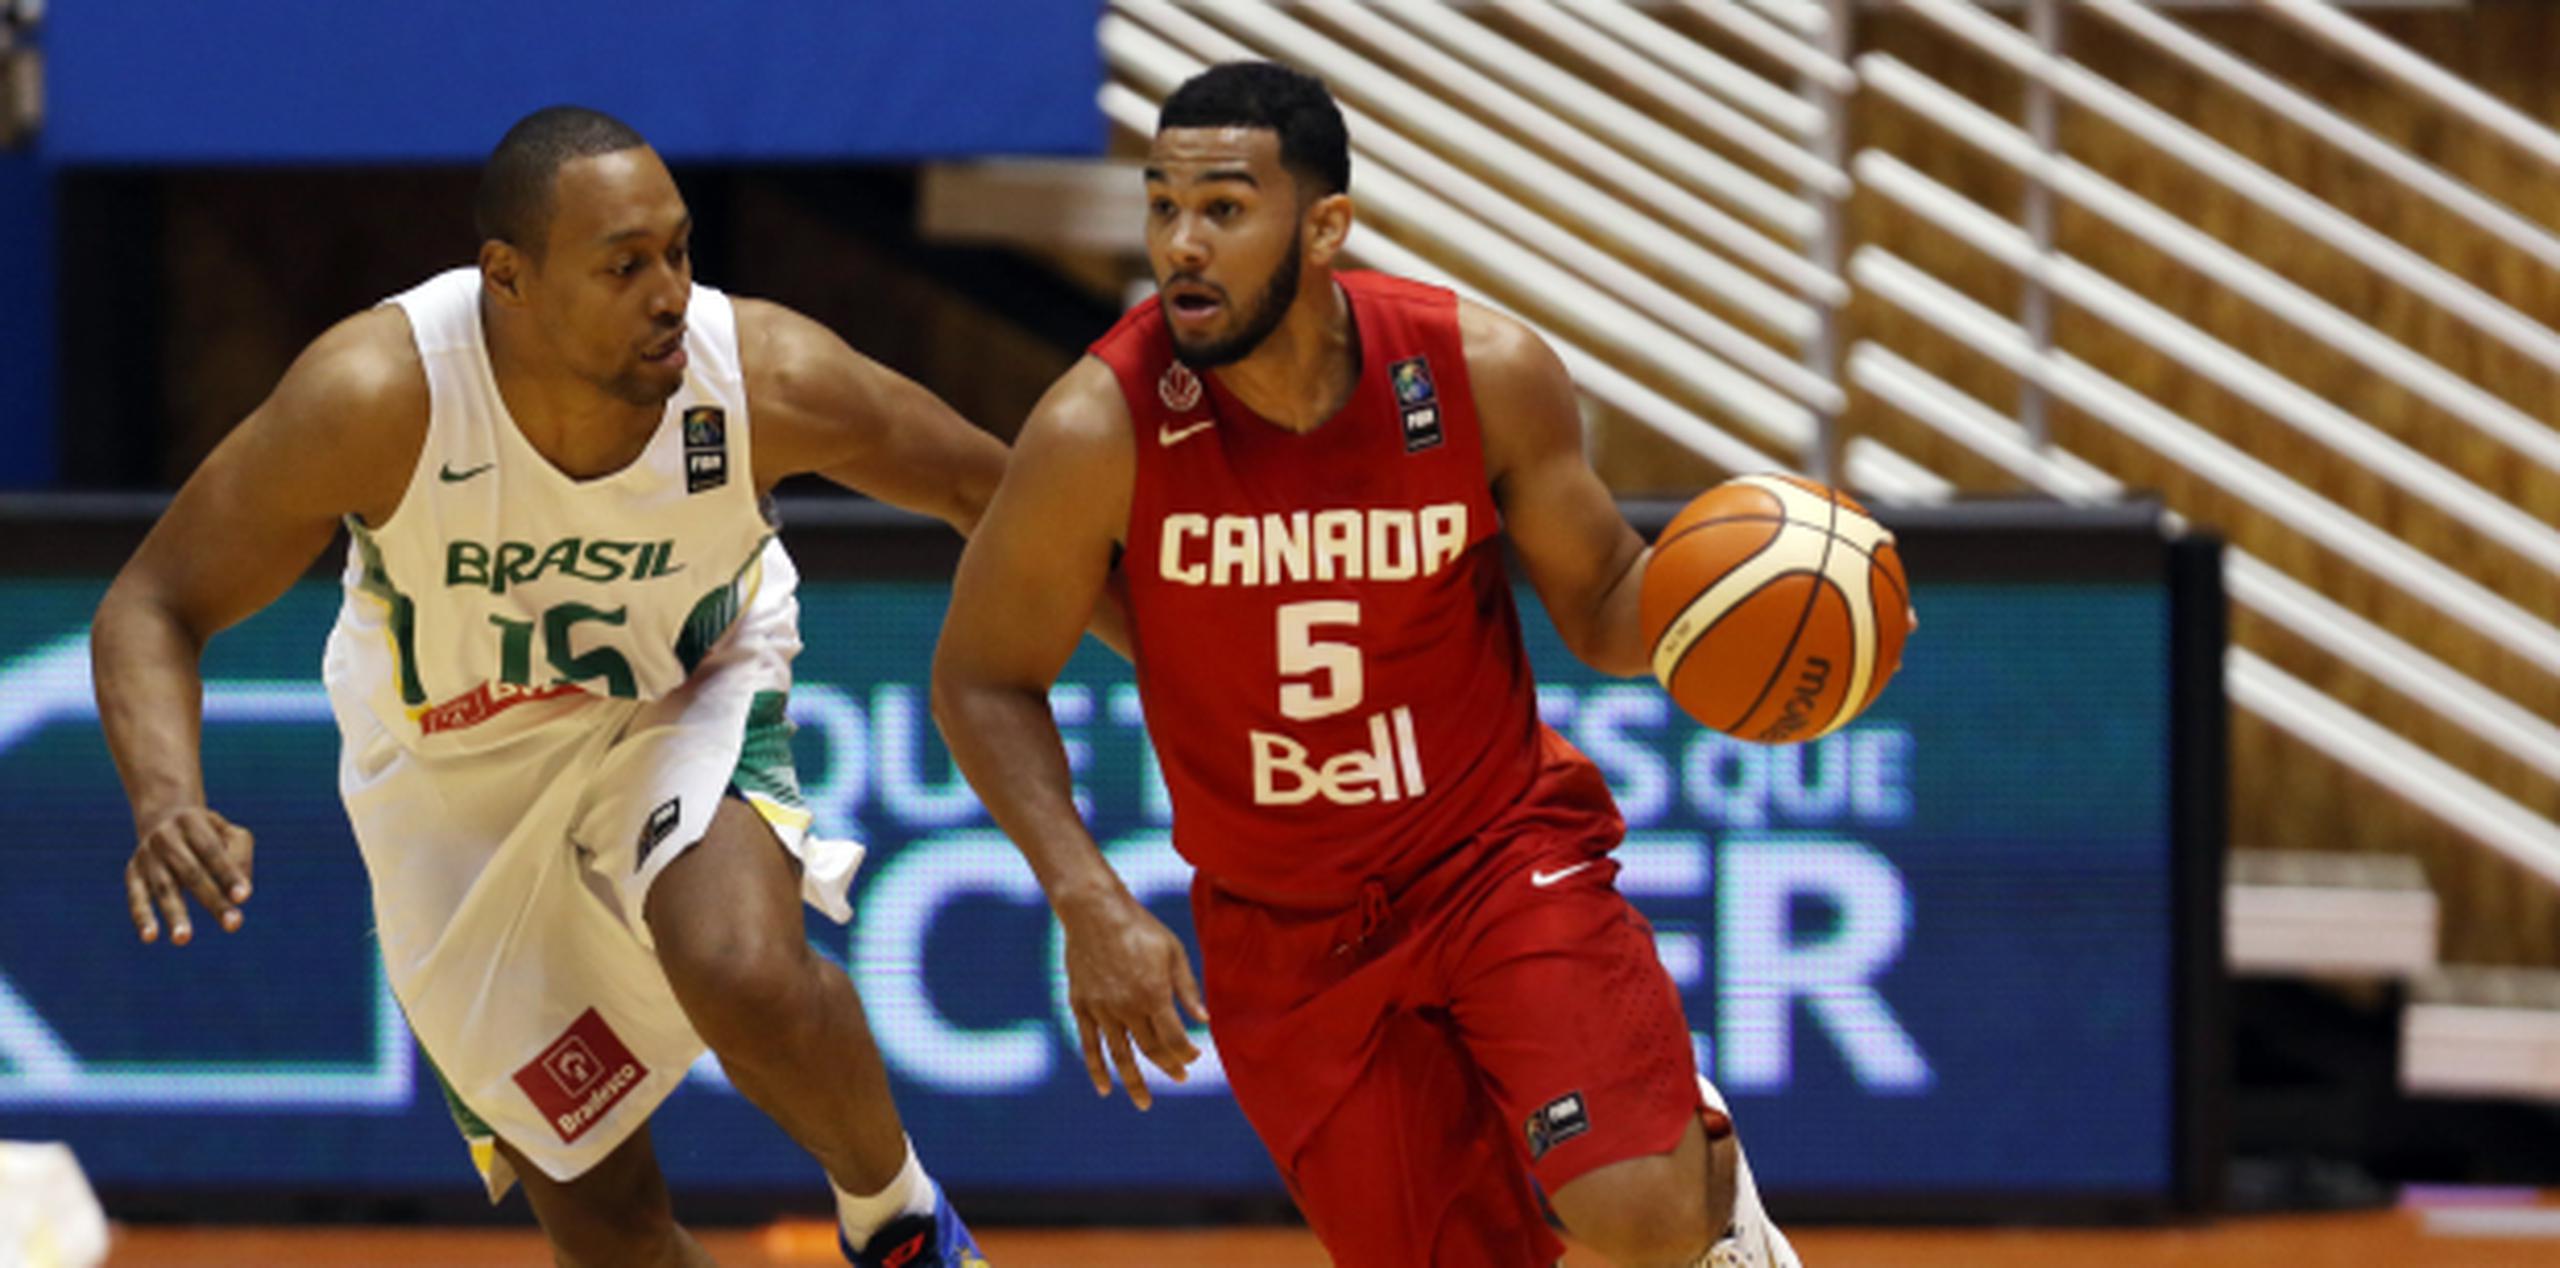 El canadiense Cory Joseph ante la defensa de Marcus Toledo, de Brasil, podrían medirse en el Preolímpico de baloncesto que inicia mañana. (juan.martinez@gfrmedia.com)